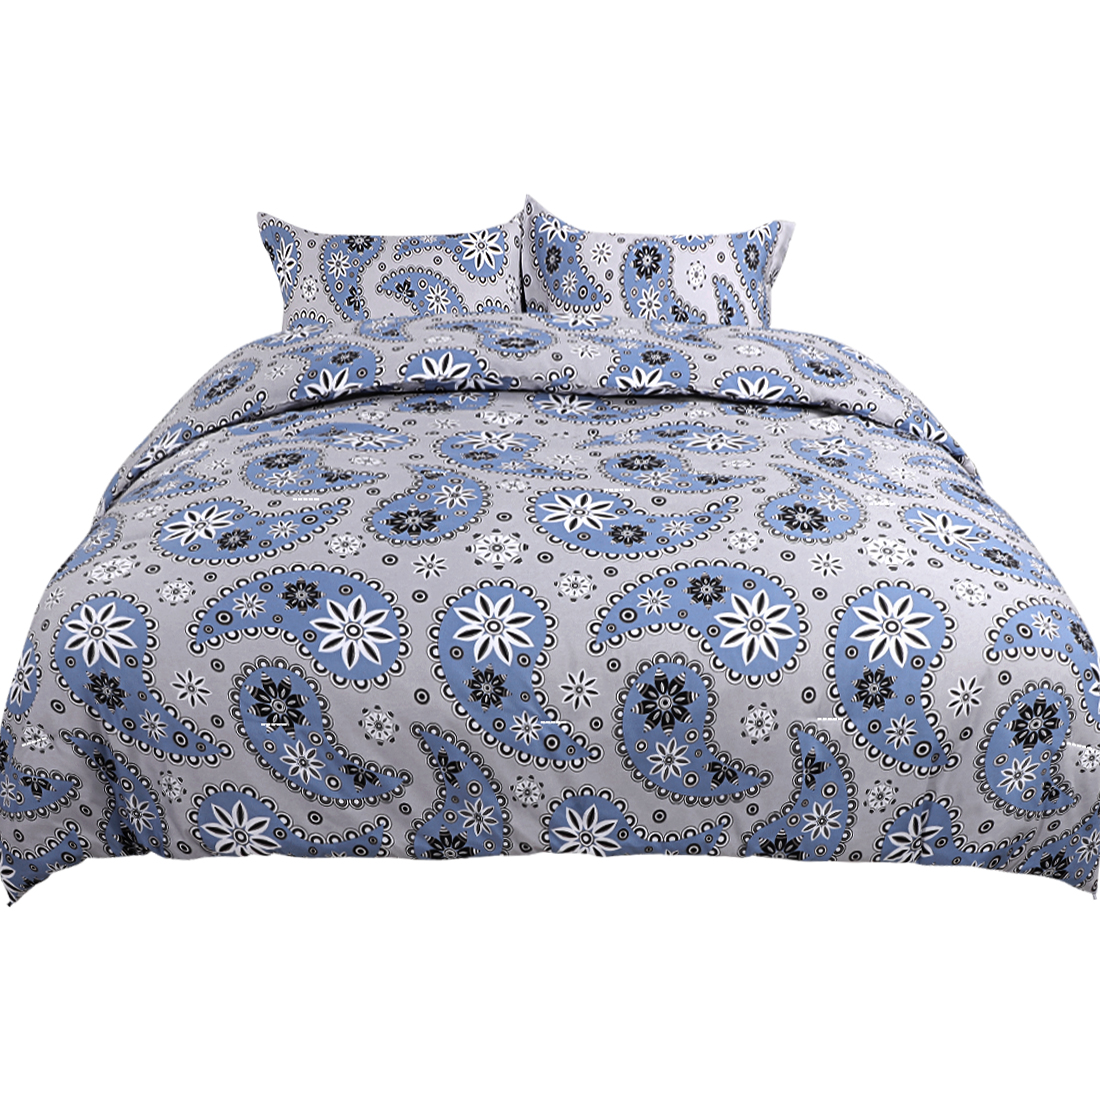 Unique Bargains 3pcs Comforter Sets Luxury Paisley Floral Pattern Duvet with 2 Pillowcase